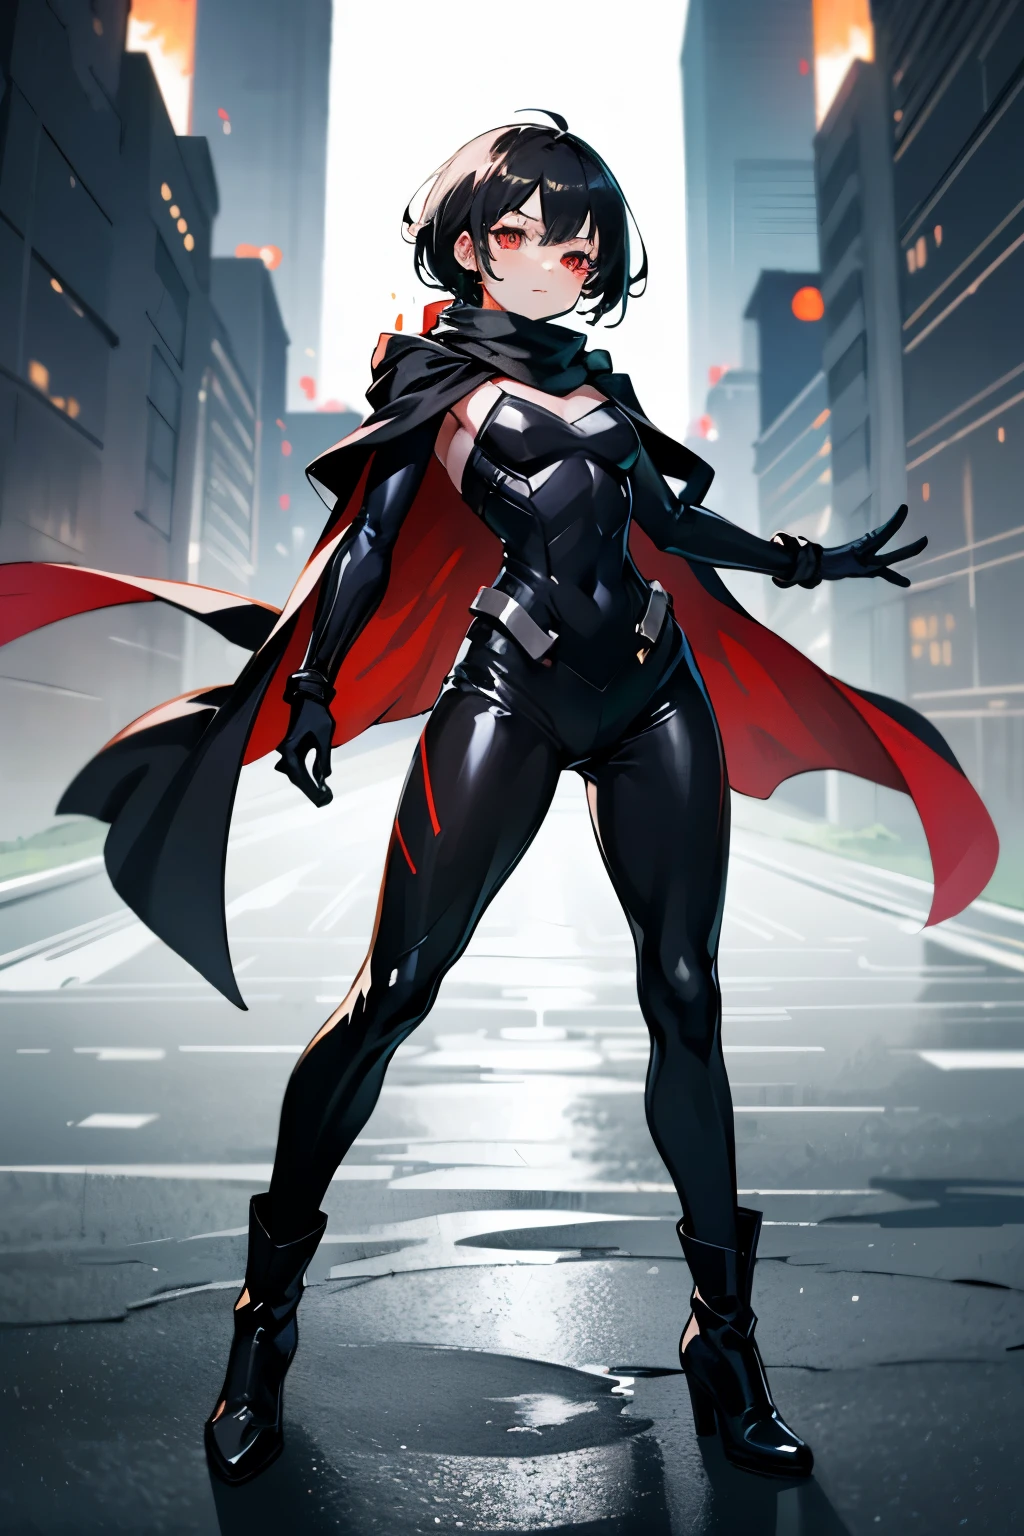 超级英雄女孩, 红眼睛, 黑色短发, 可爱的脸孔, 黑色围巾, 黑色英雄套装, 黑色长靴, 黑手套, 手中的红色魔法力量, 全身照片:1.5,